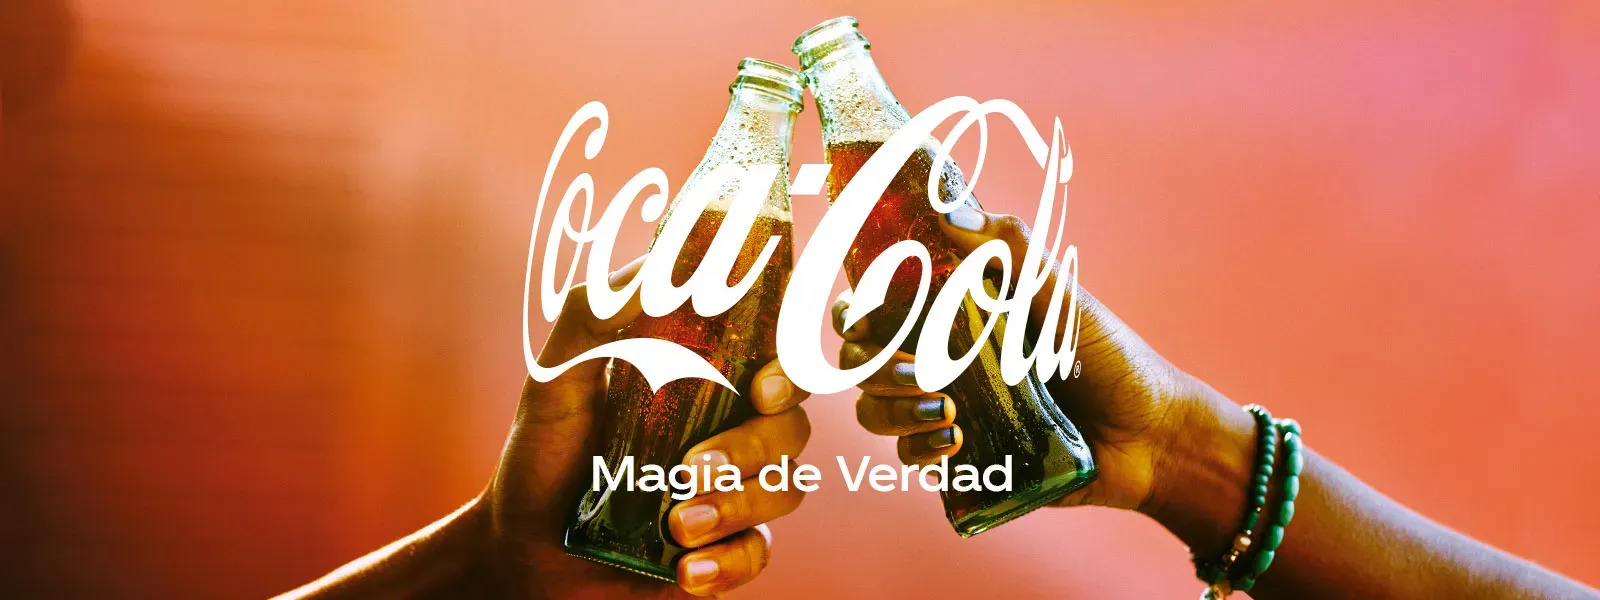 Logo de Coca-Cola Mágica de verdad con dos manos levantando bebidas Coca-Cola en señal de celebración